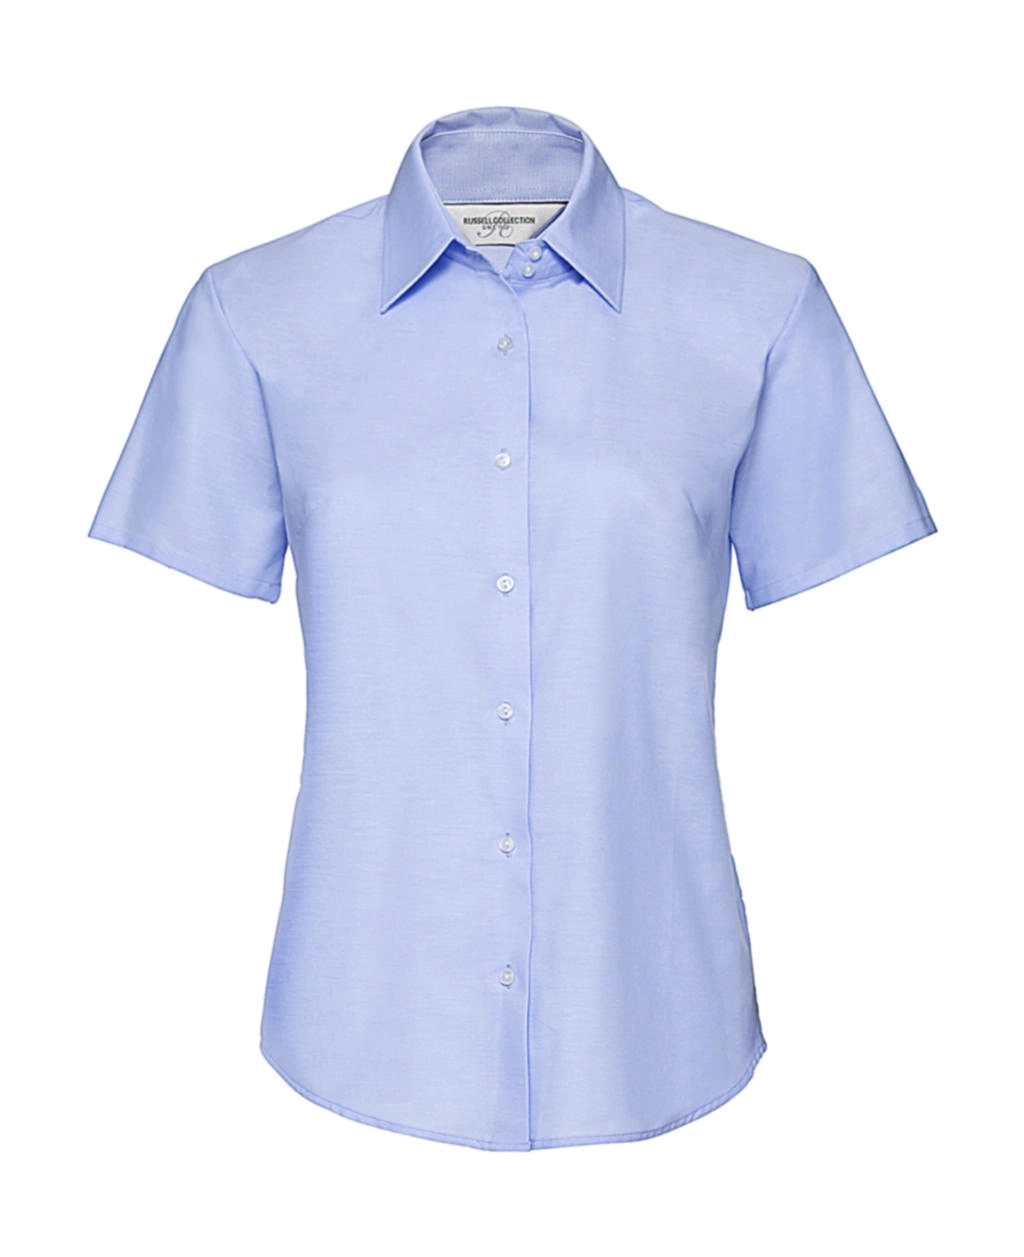 Ladies` Classic Oxford Shirt zum Besticken und Bedrucken in der Farbe Oxford Blue mit Ihren Logo, Schriftzug oder Motiv.